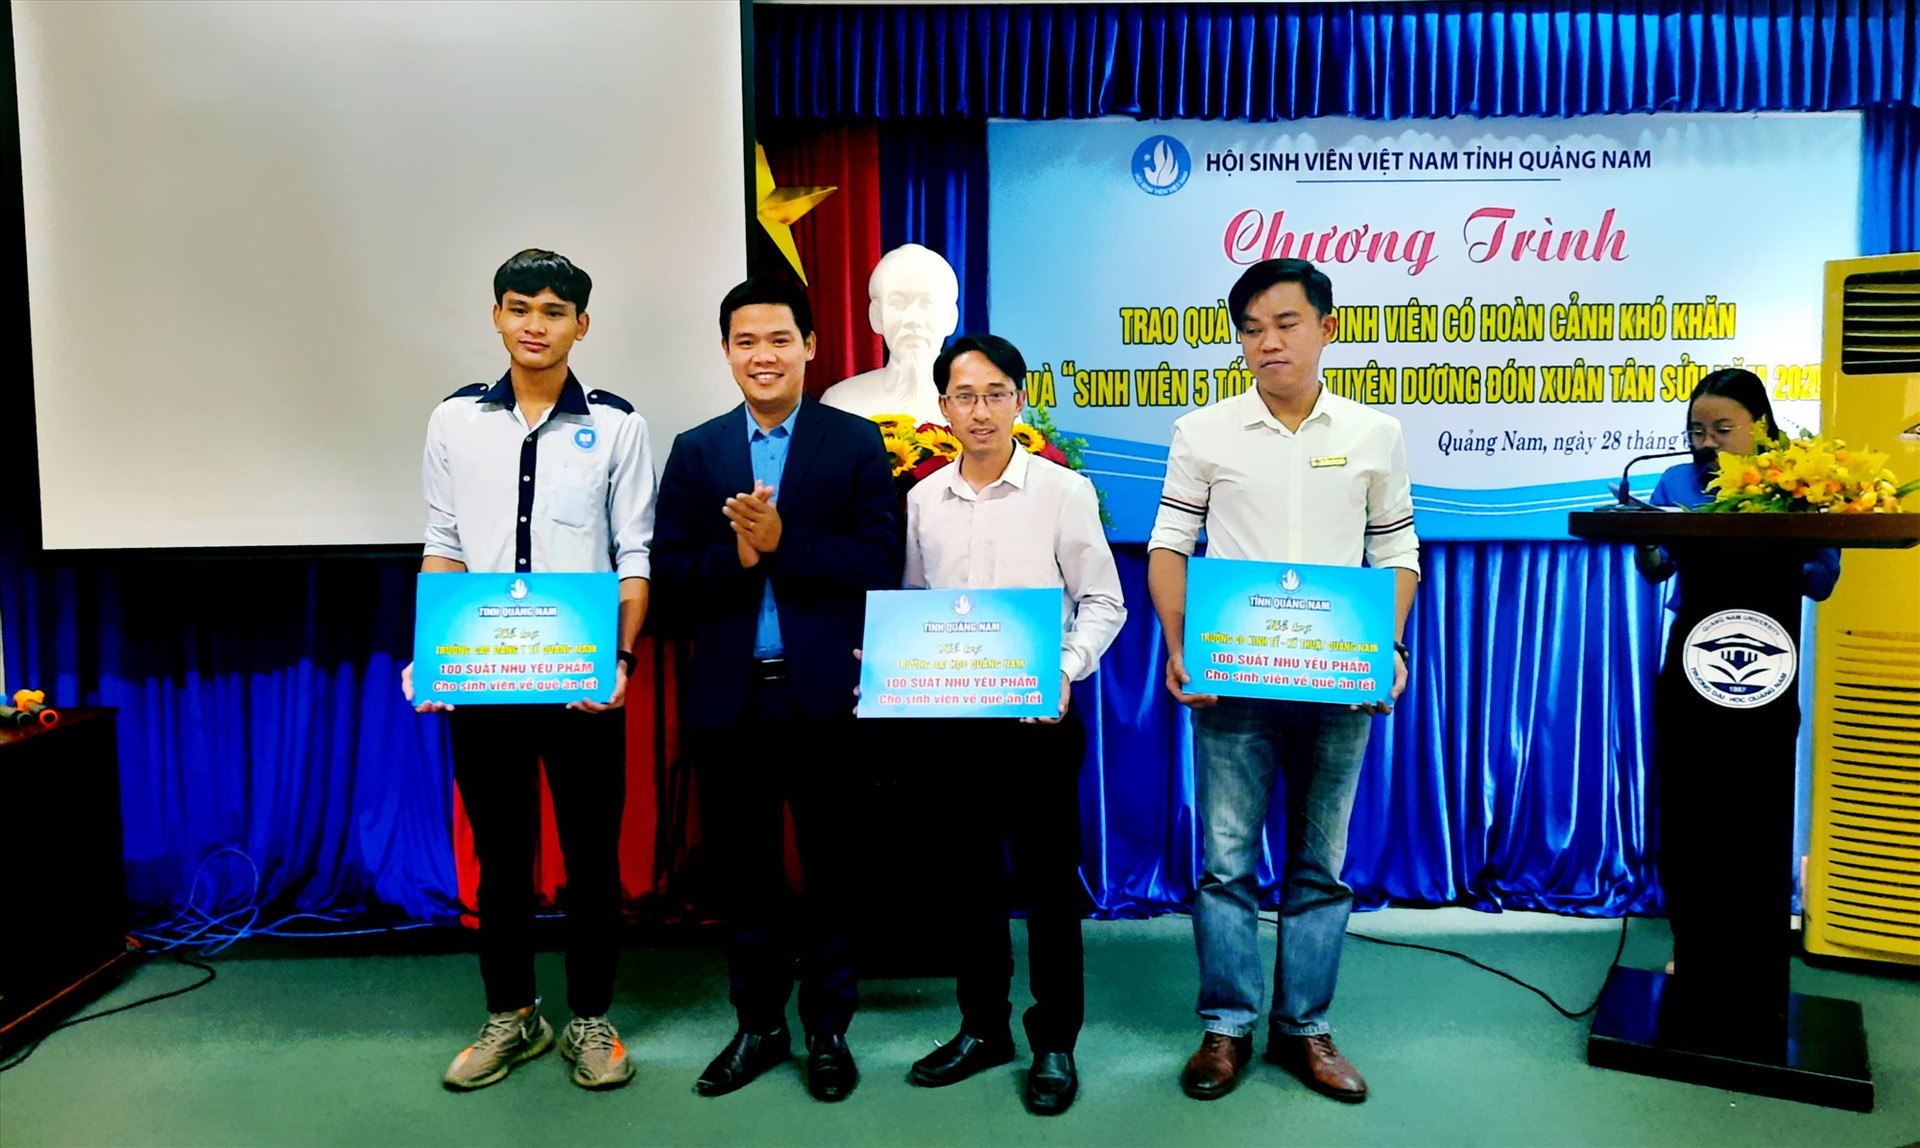 Đồng chí Hoàng Văn Thanh - Chủ tịch Hội Sinh viên Việt Nam tỉnh trao biển tượng trưng hỗ trợ quà cho sinh viên. Ảnh: THÁI CƯỜNG